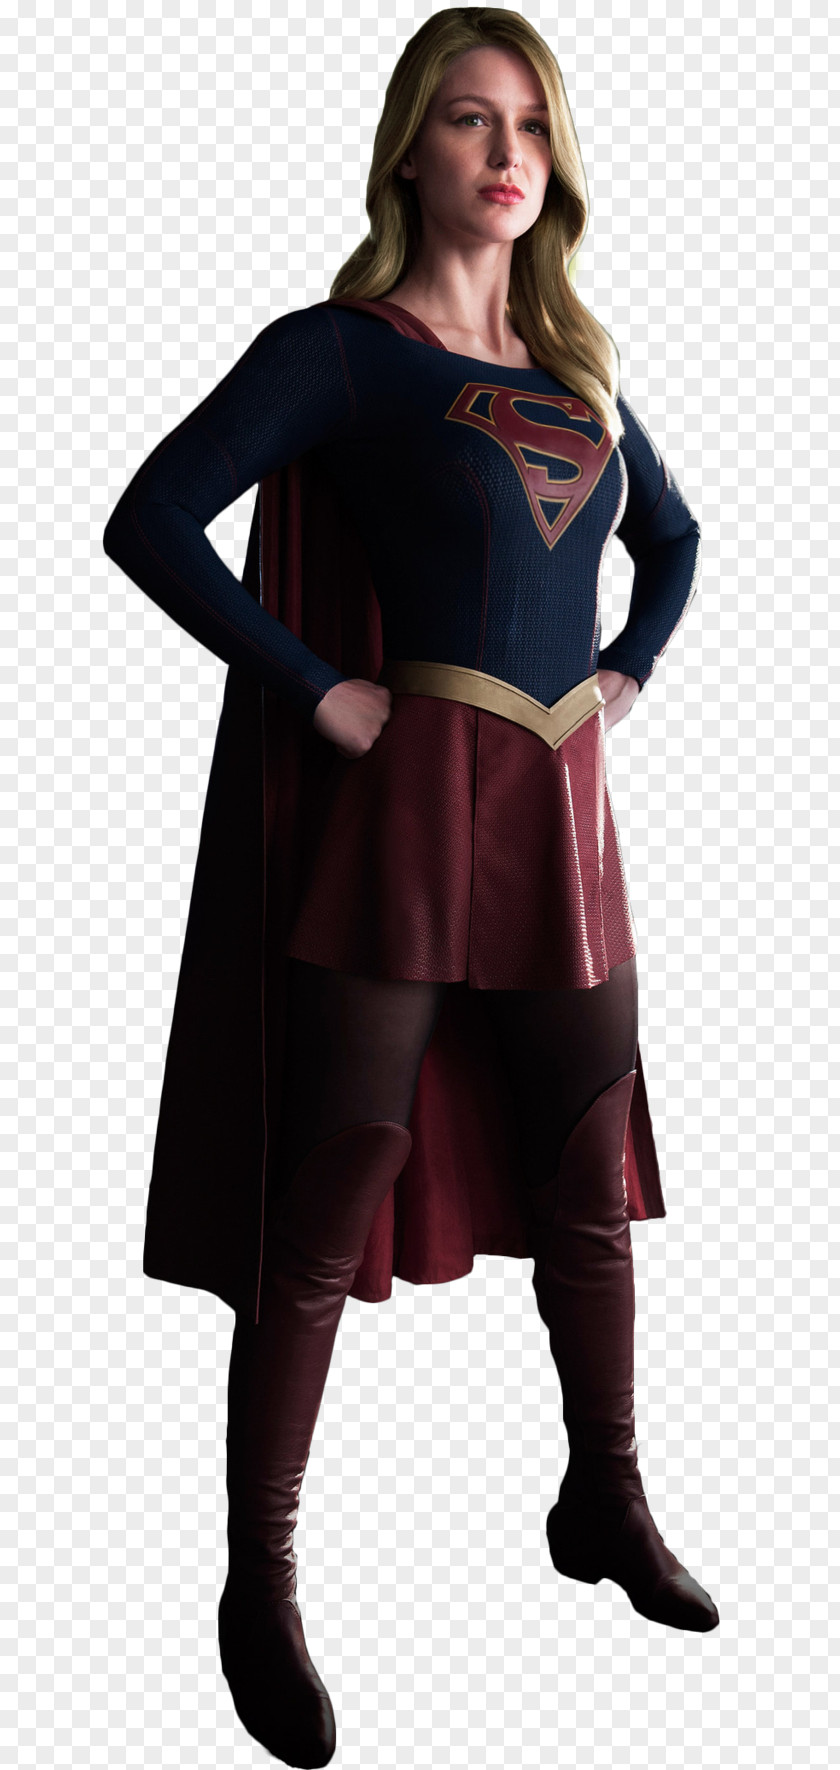 Supergirl Melissa Benoist Zor-El Superman Cosplay PNG